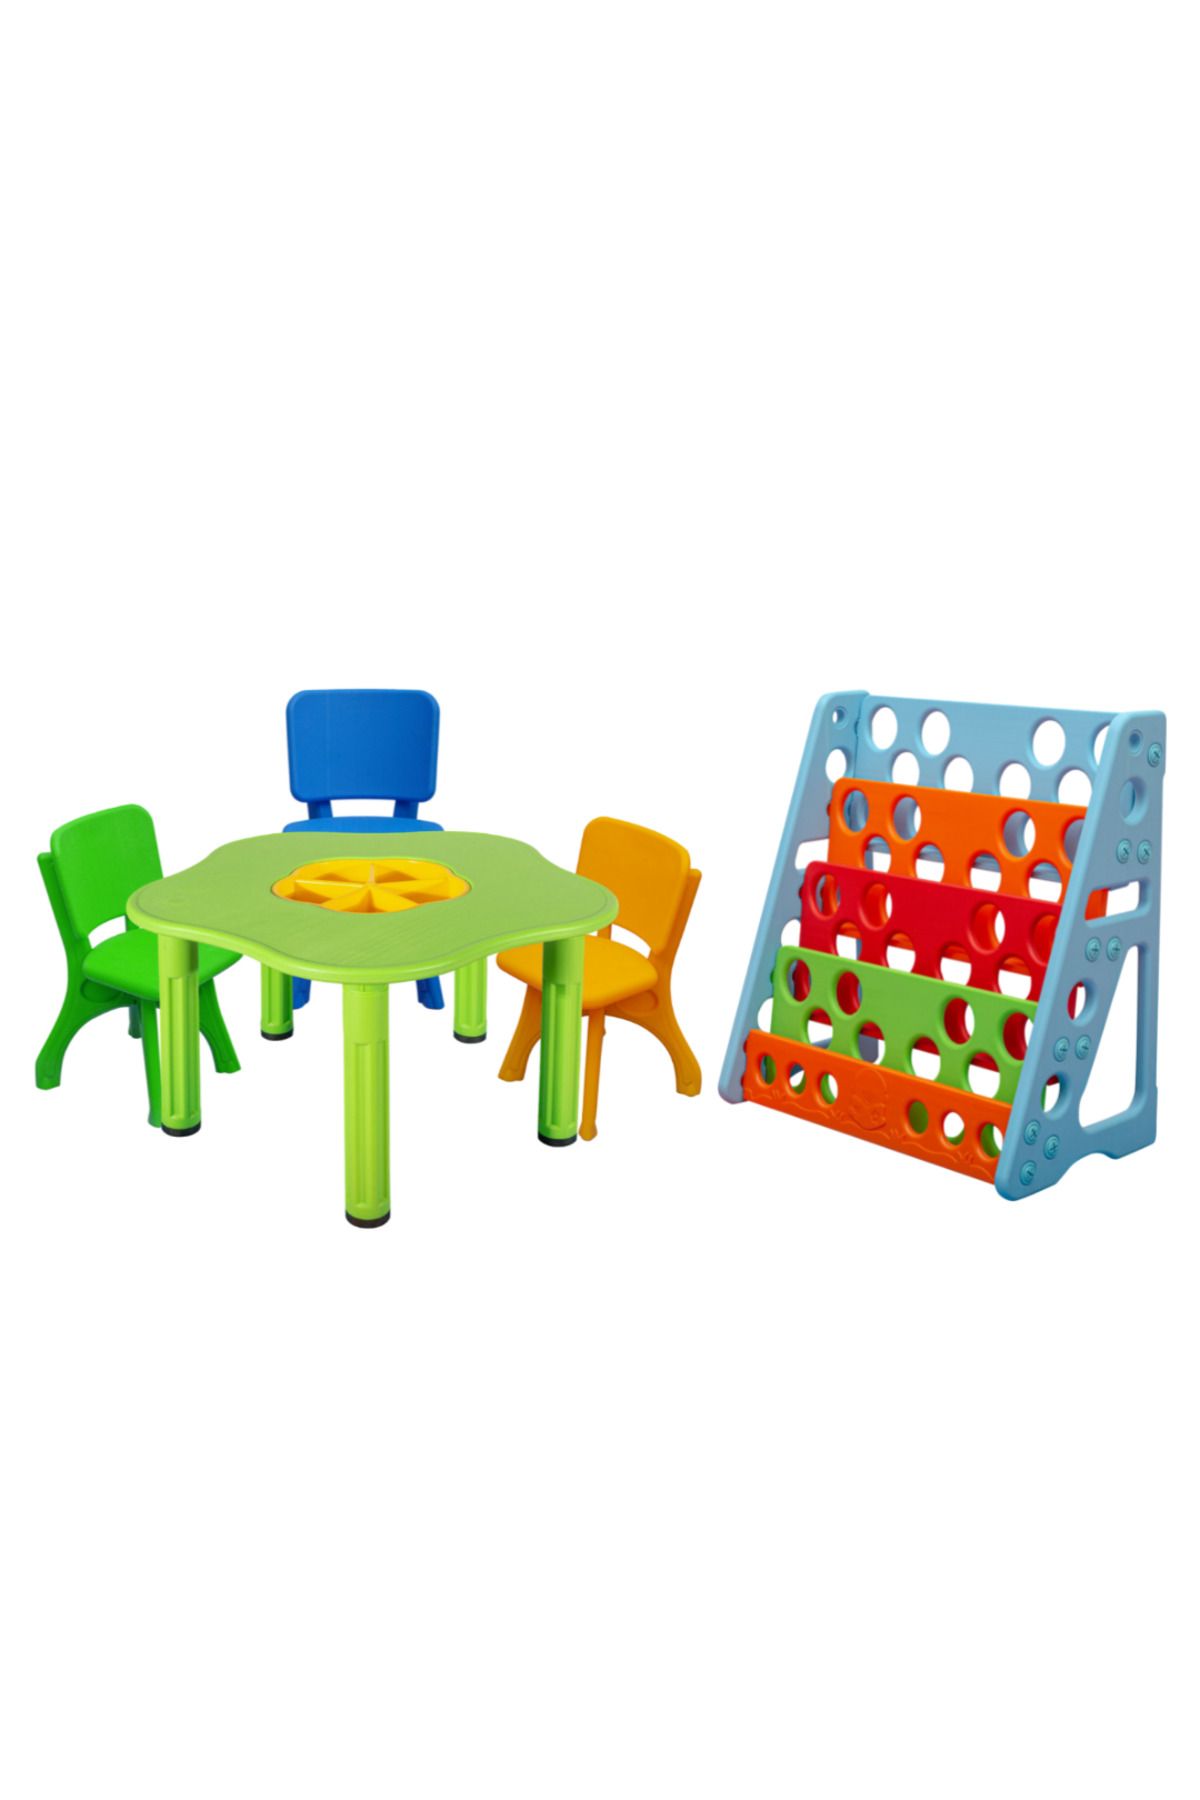 ÇIRAK Çocuk Aktivite Masası - Renkli Sandalyeler ve Renkli Kitaplık - Büyük Masa Set - Anaokulu - Kreş